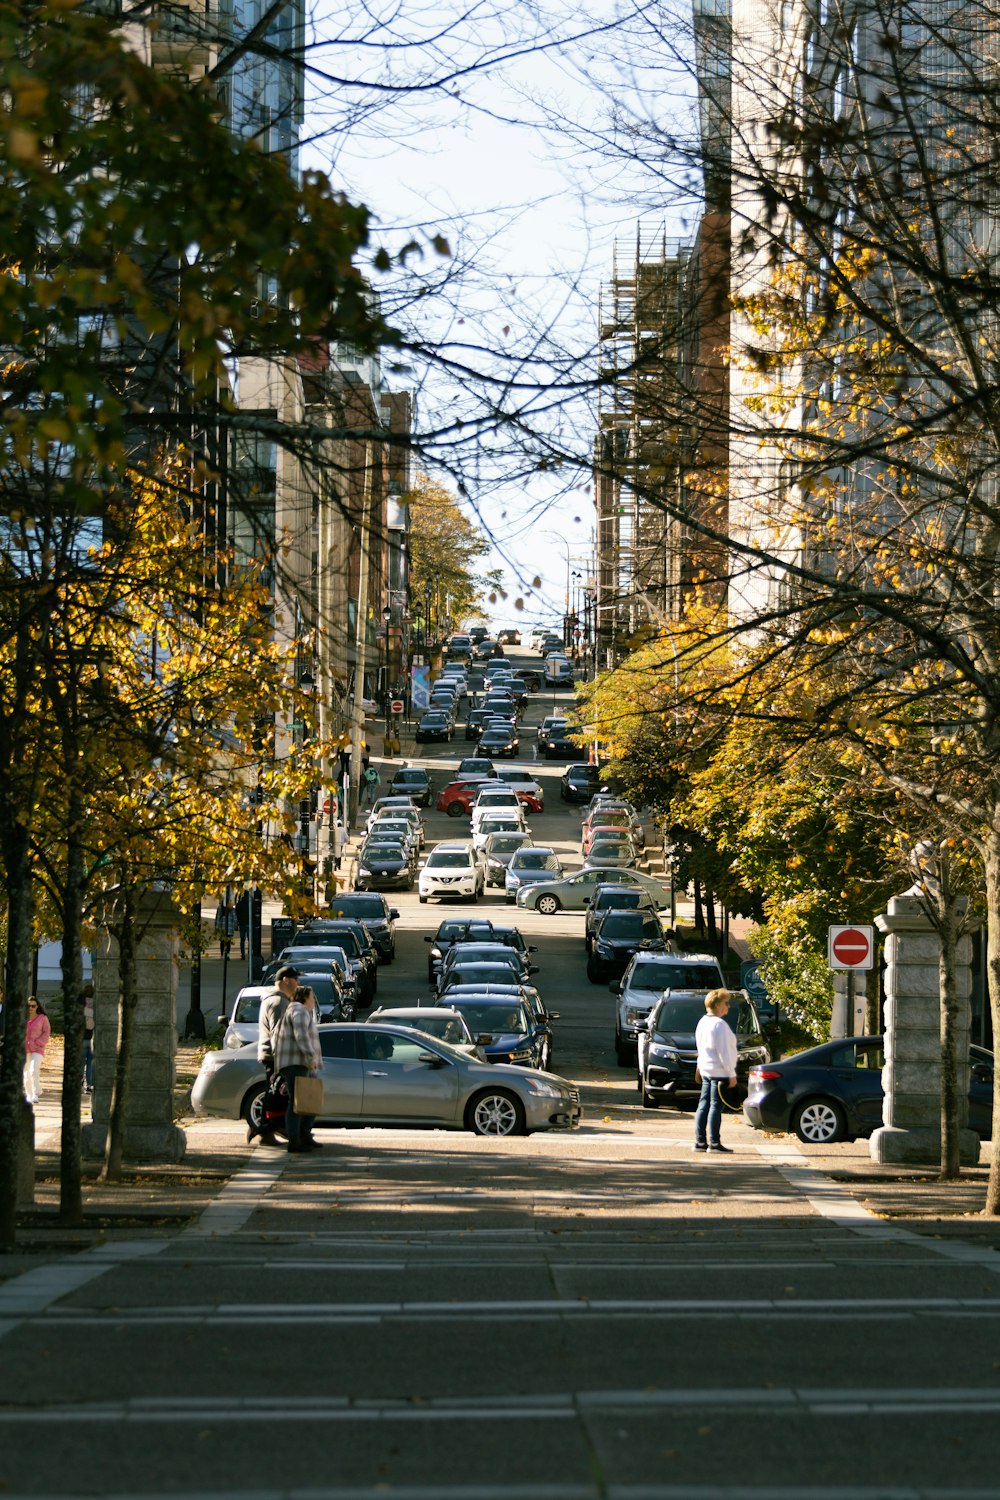 Una calle concurrida con coches y gente